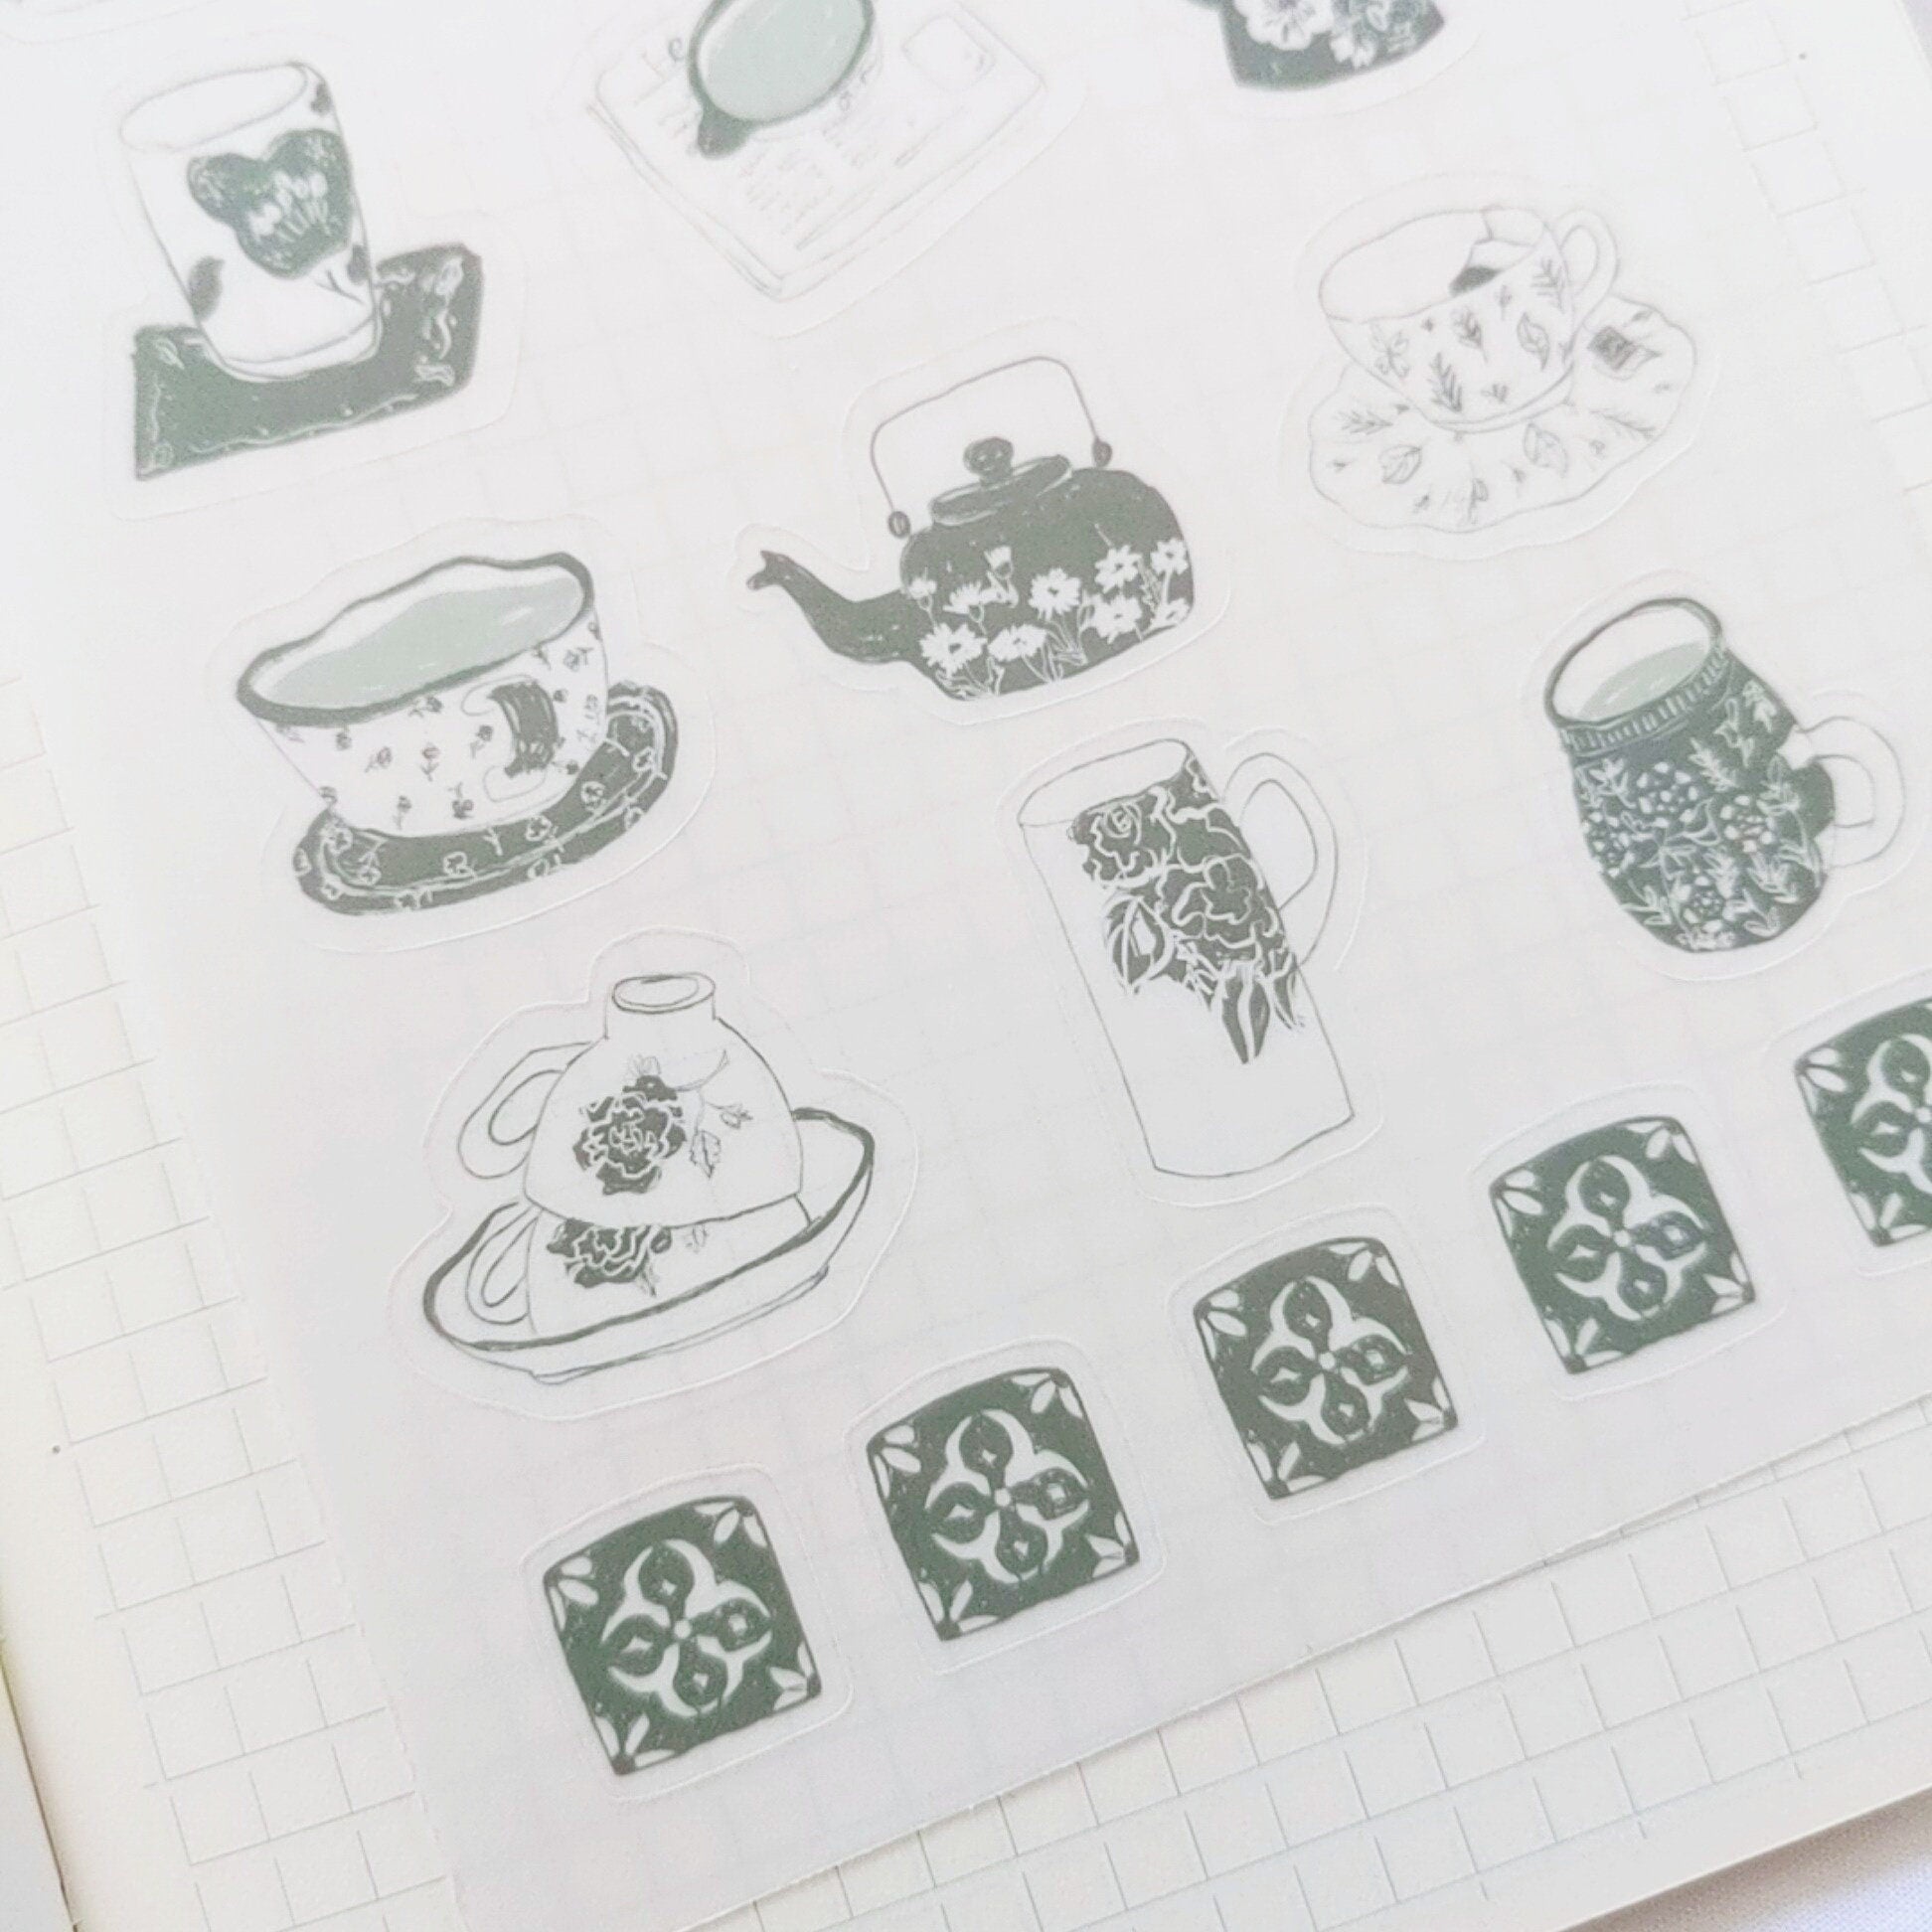 sticker sheet | tea time | matcha green tea cups | cozy | tea lover